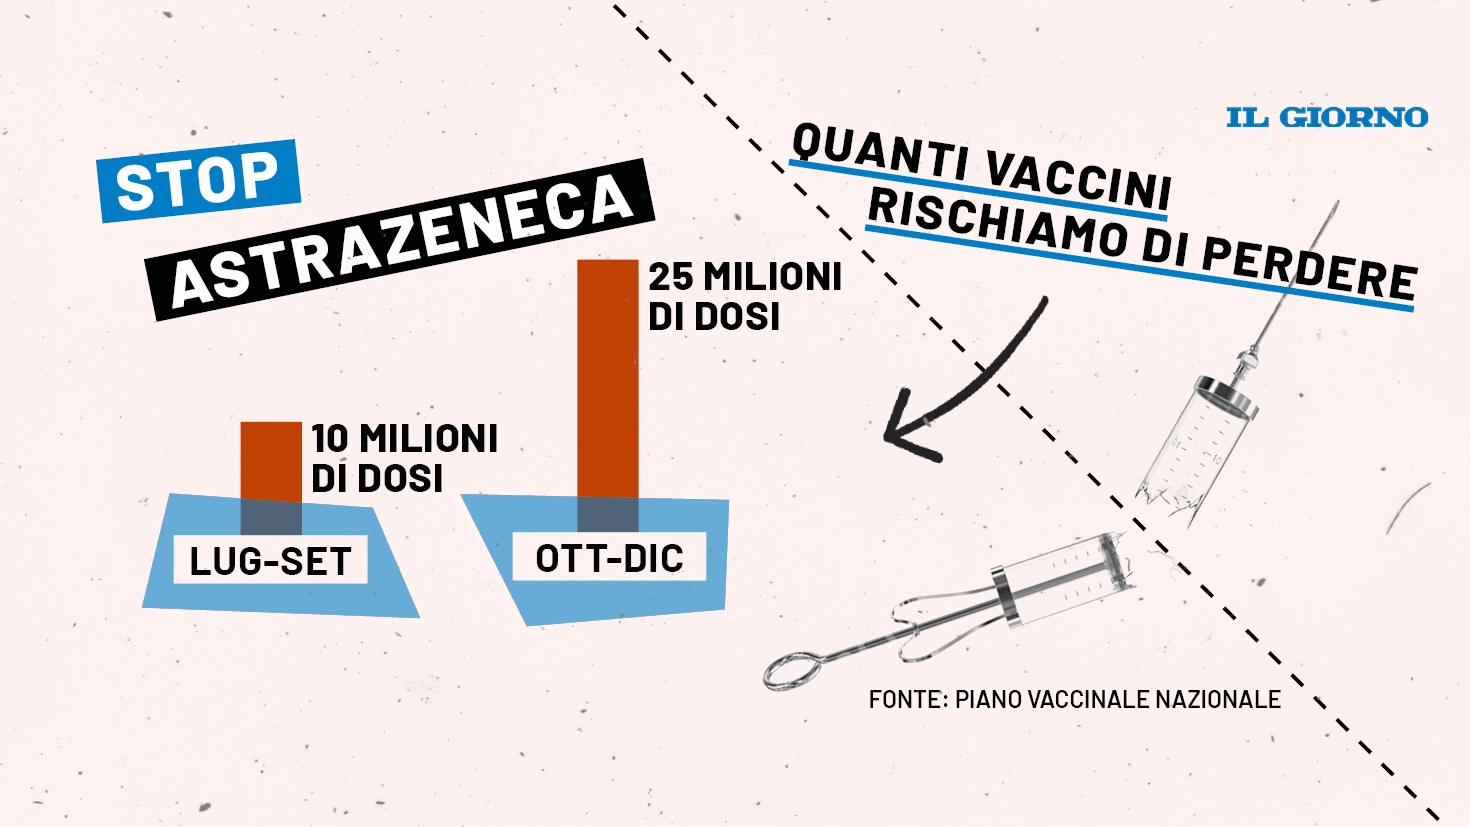 Stop ad Astrazeneca: quanti vaccini rischiamo di perdere